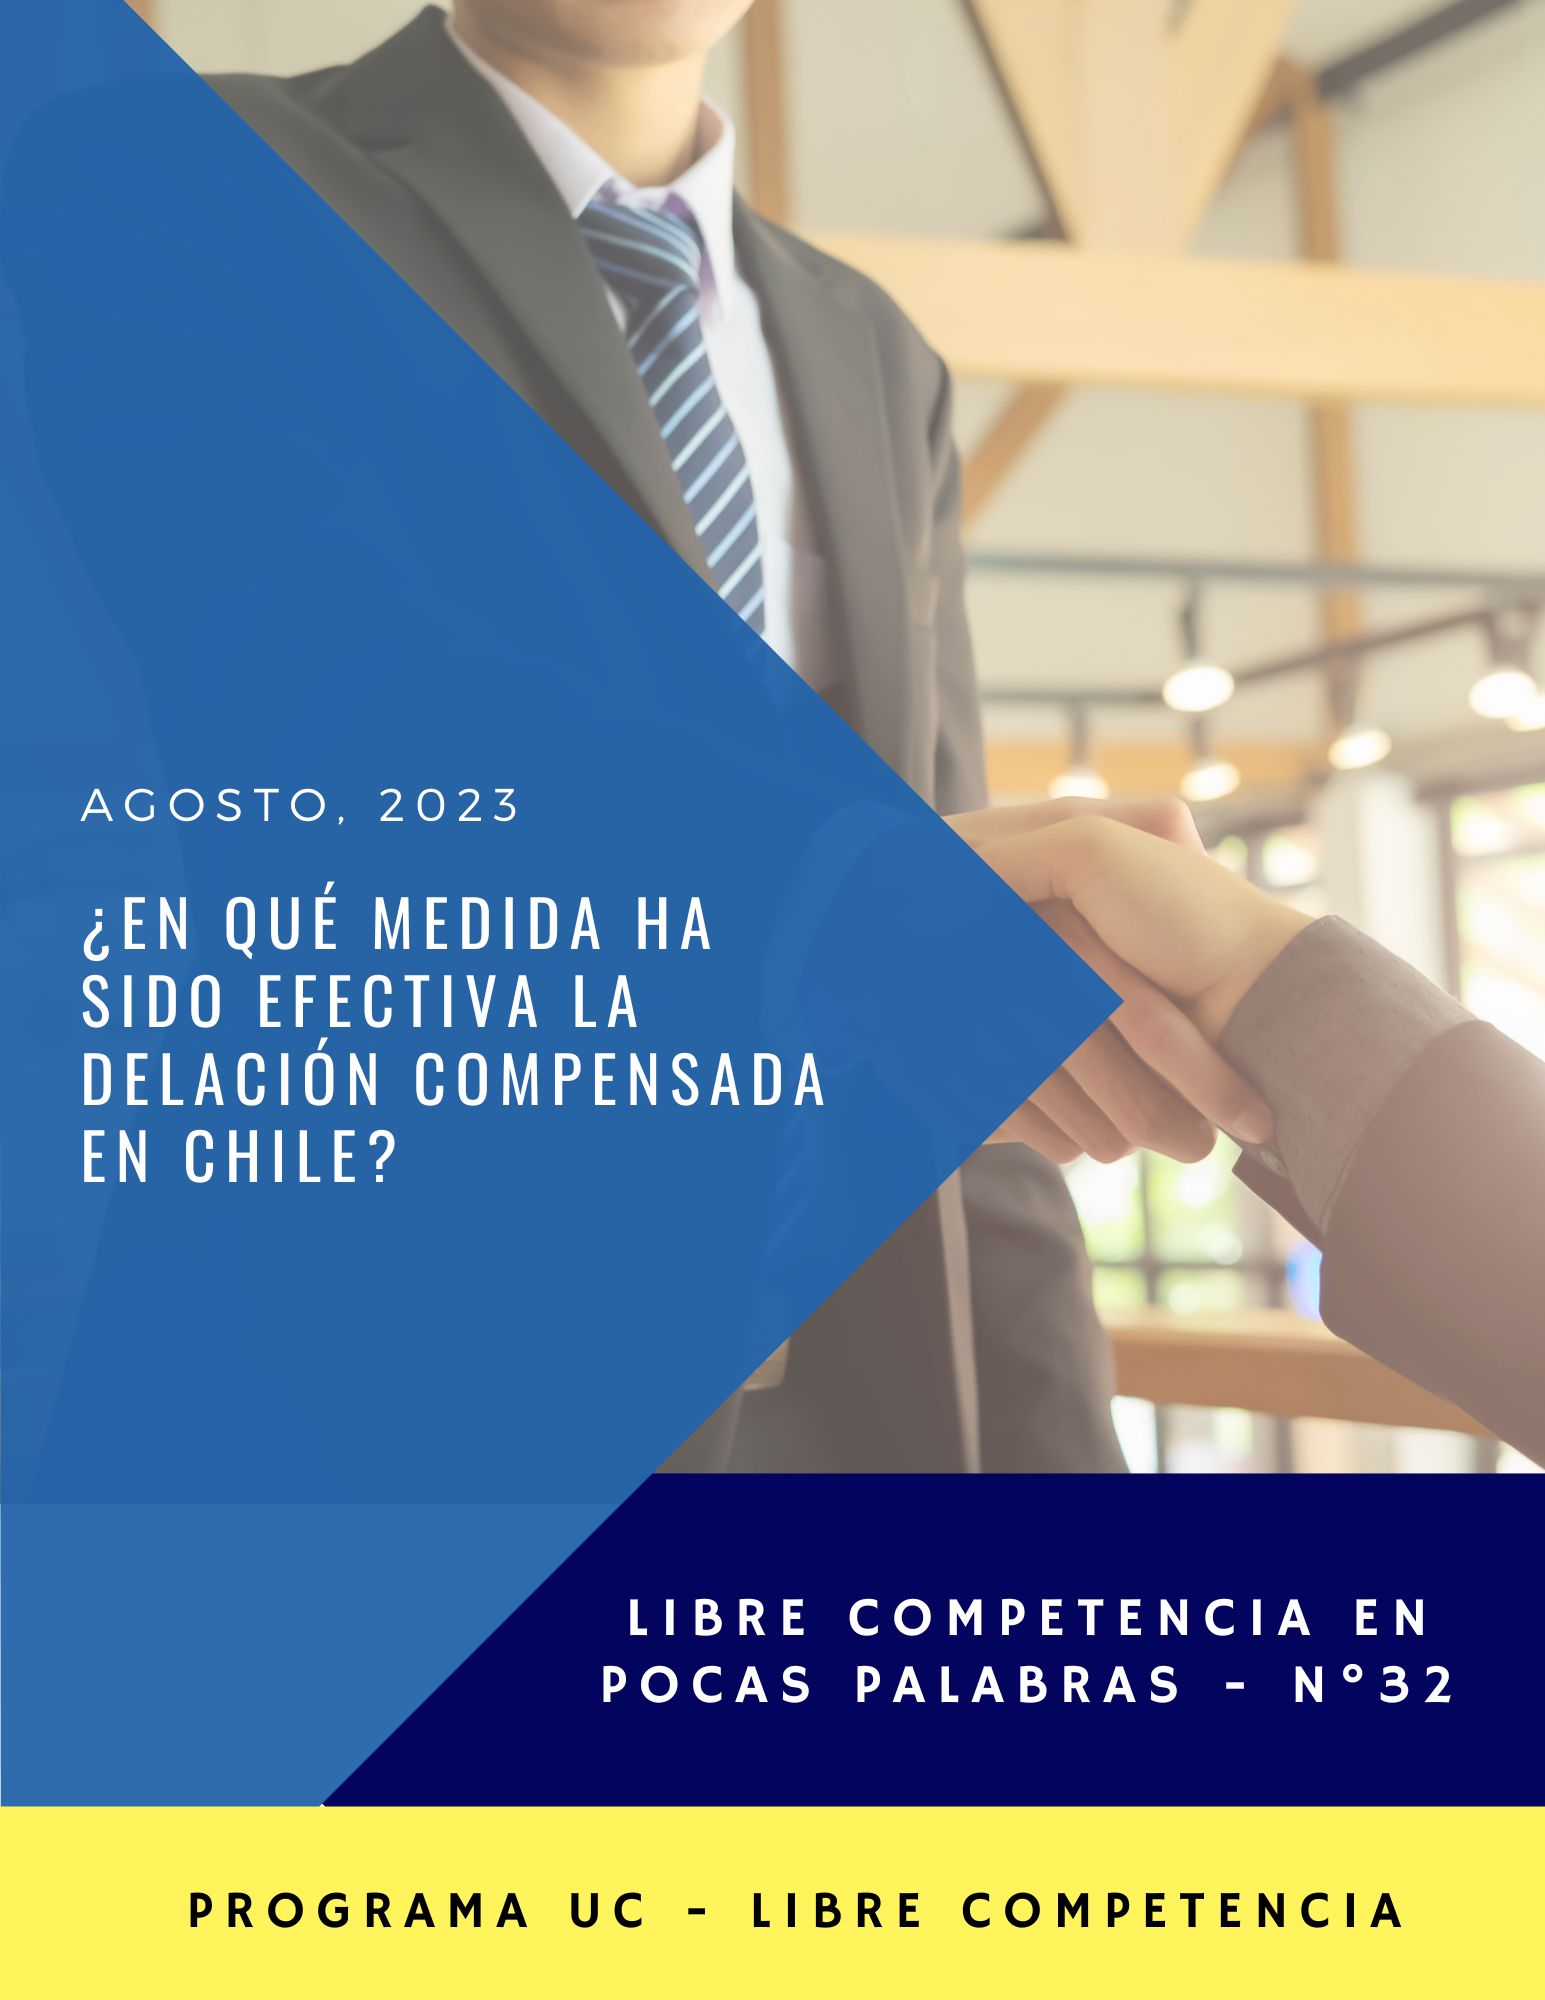 LCPP N°32 (Agosto 2023): ¿En qué medida ha sido efectiva la delación compensada en Chile?